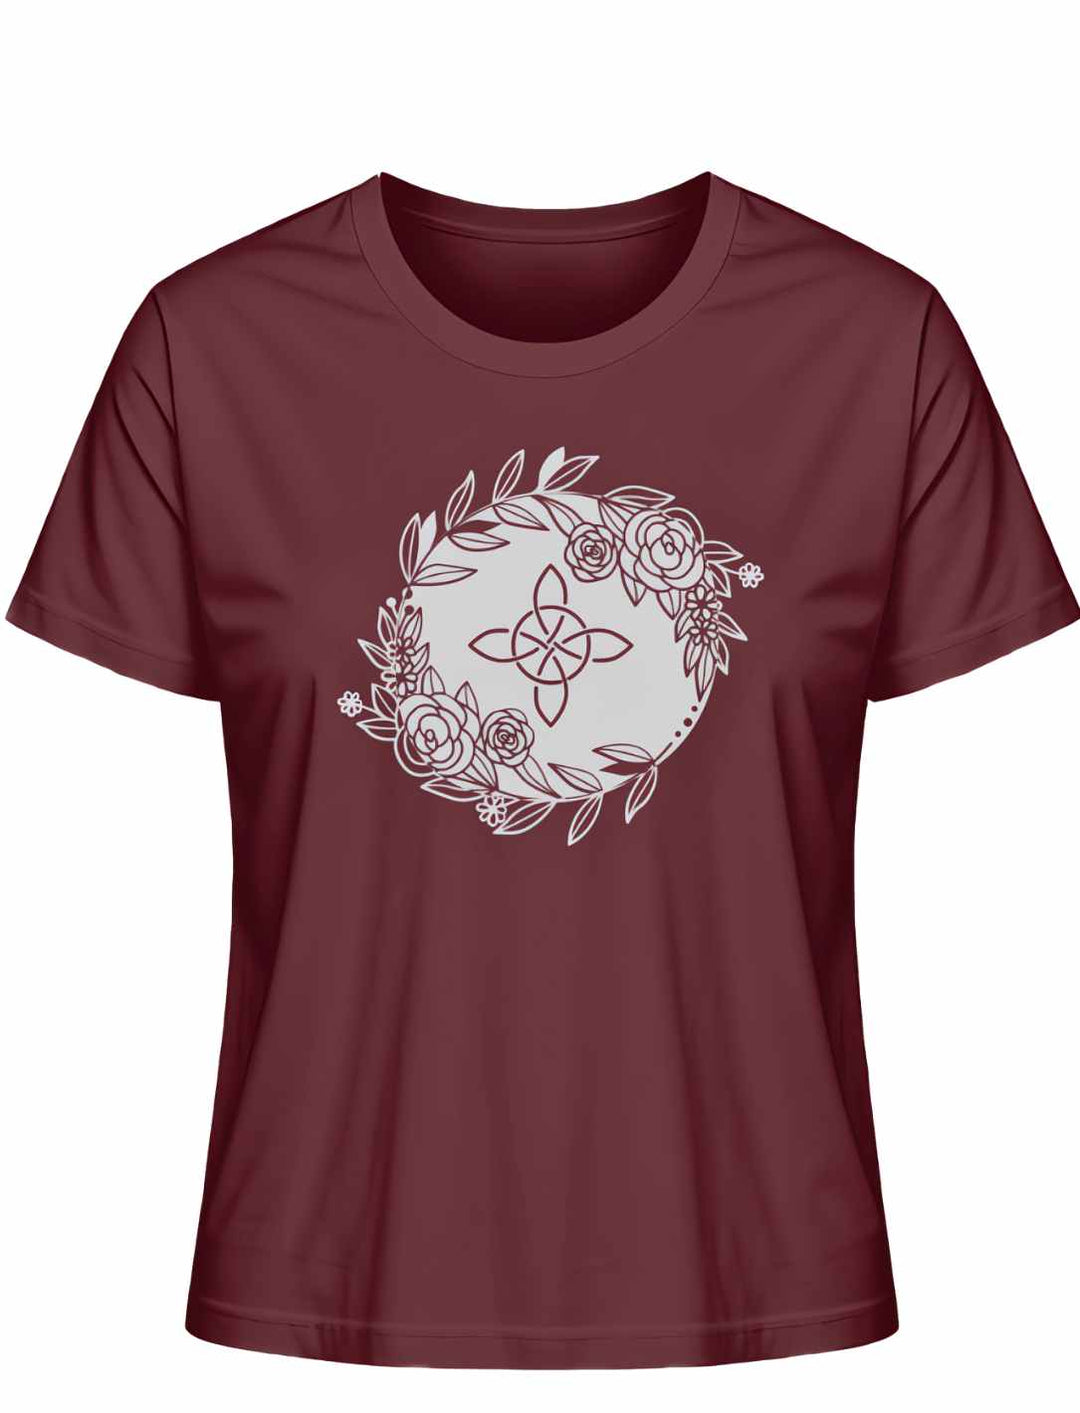 Liegedarstellung eines burgunderroten 'Eriu Witch Knot'-T-Shirts mit einem detaillierten keltischen Knoten- und Hexensymbol-Design